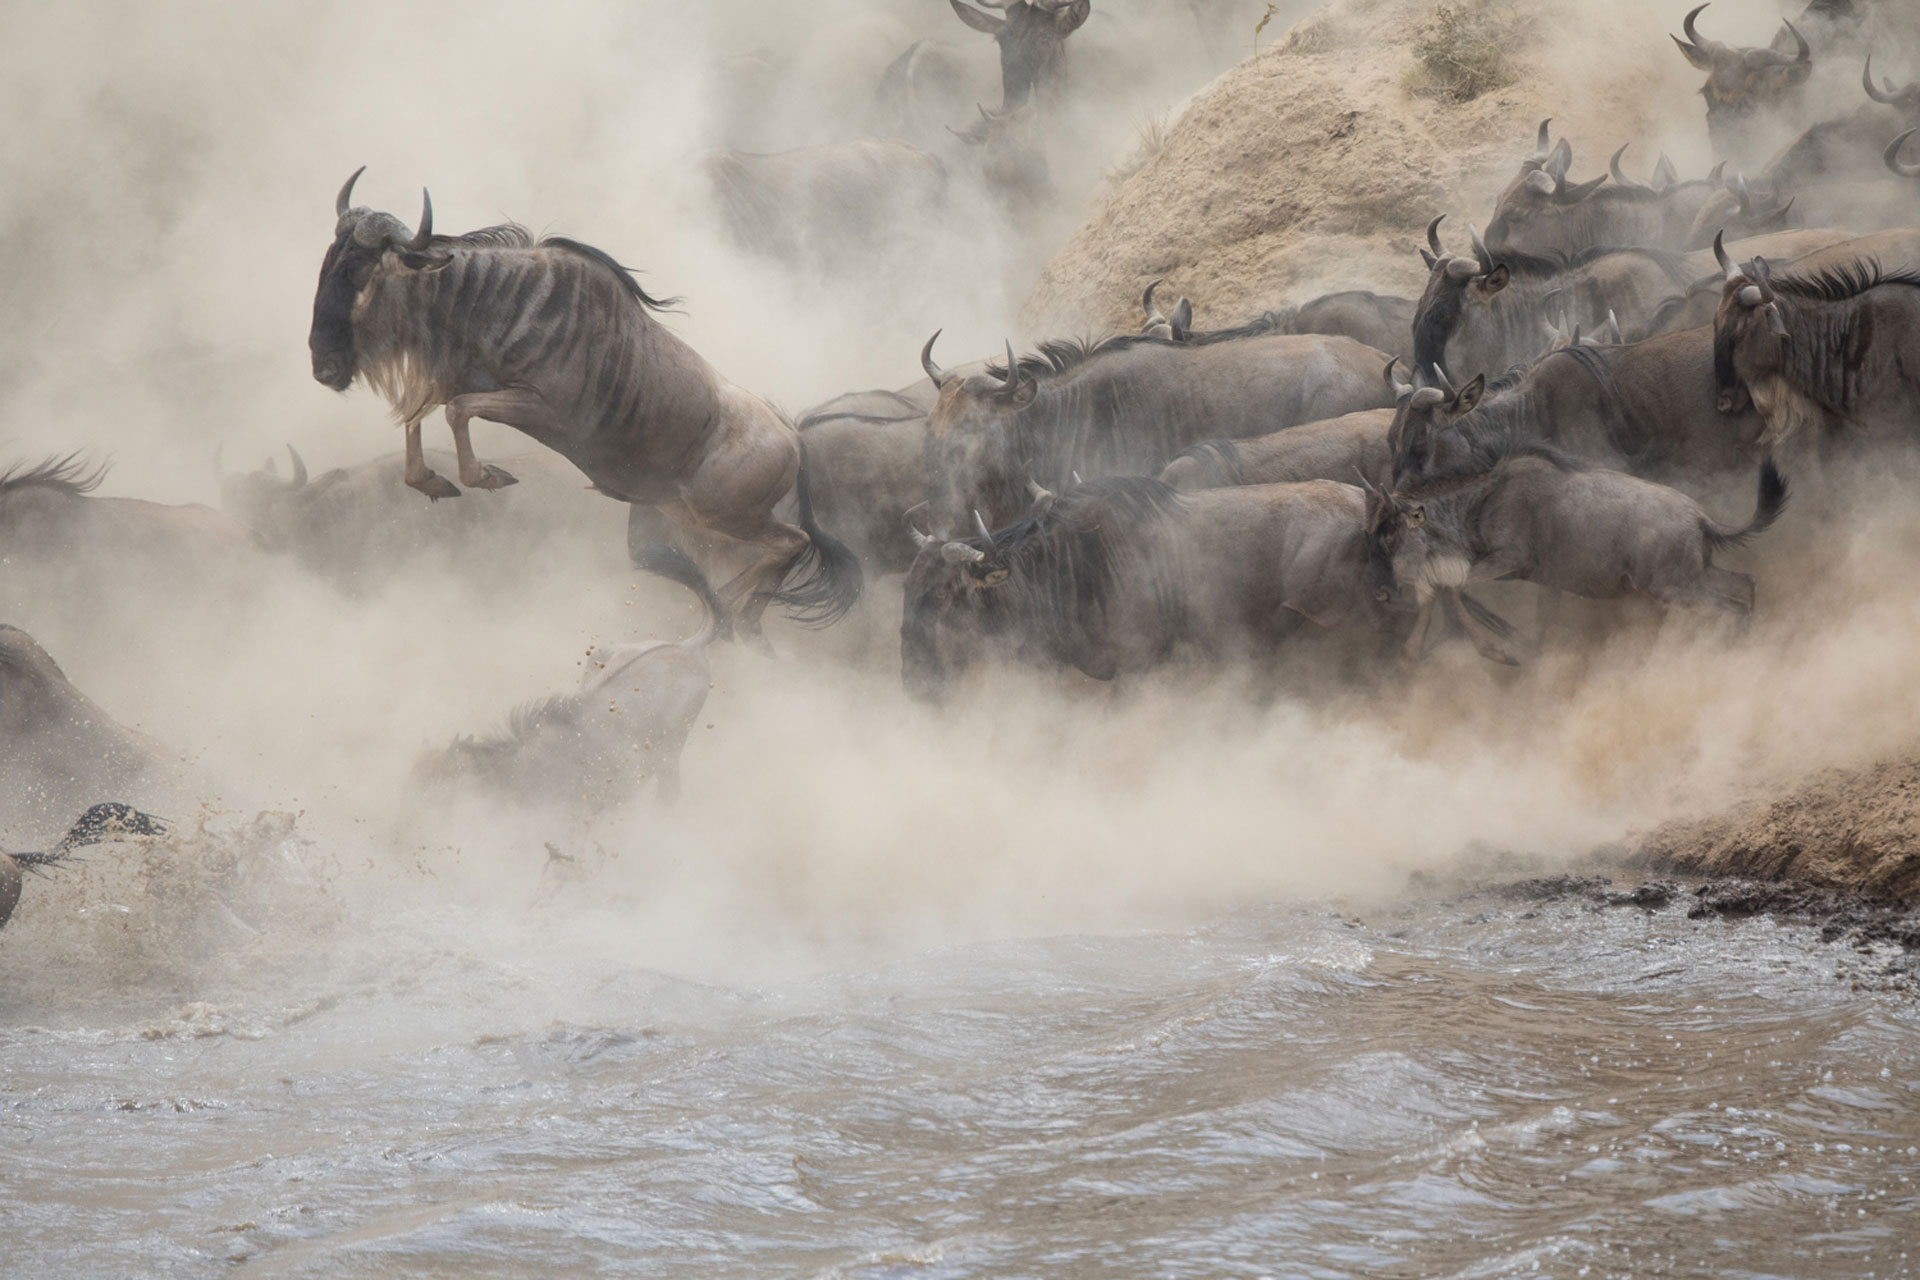 image taken in Kenya Safari